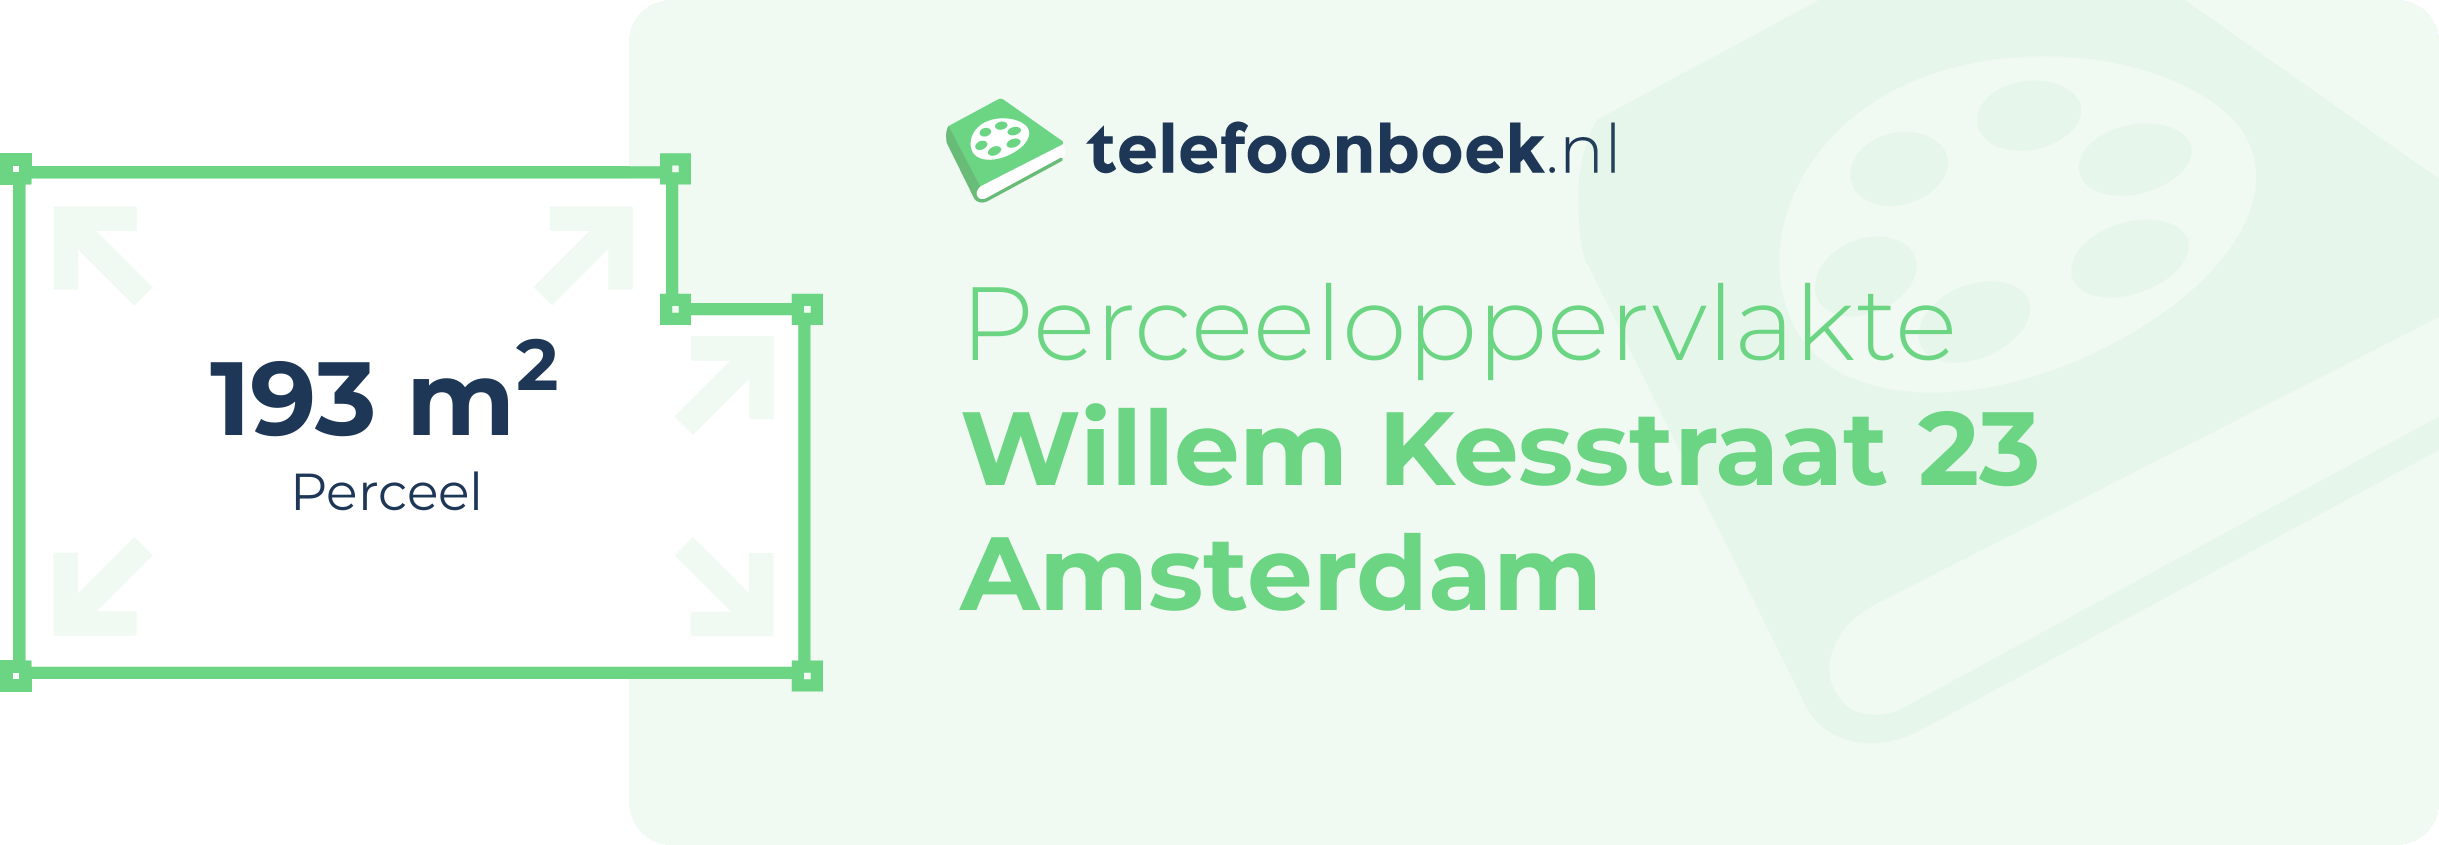 Perceeloppervlakte Willem Kesstraat 23 Amsterdam